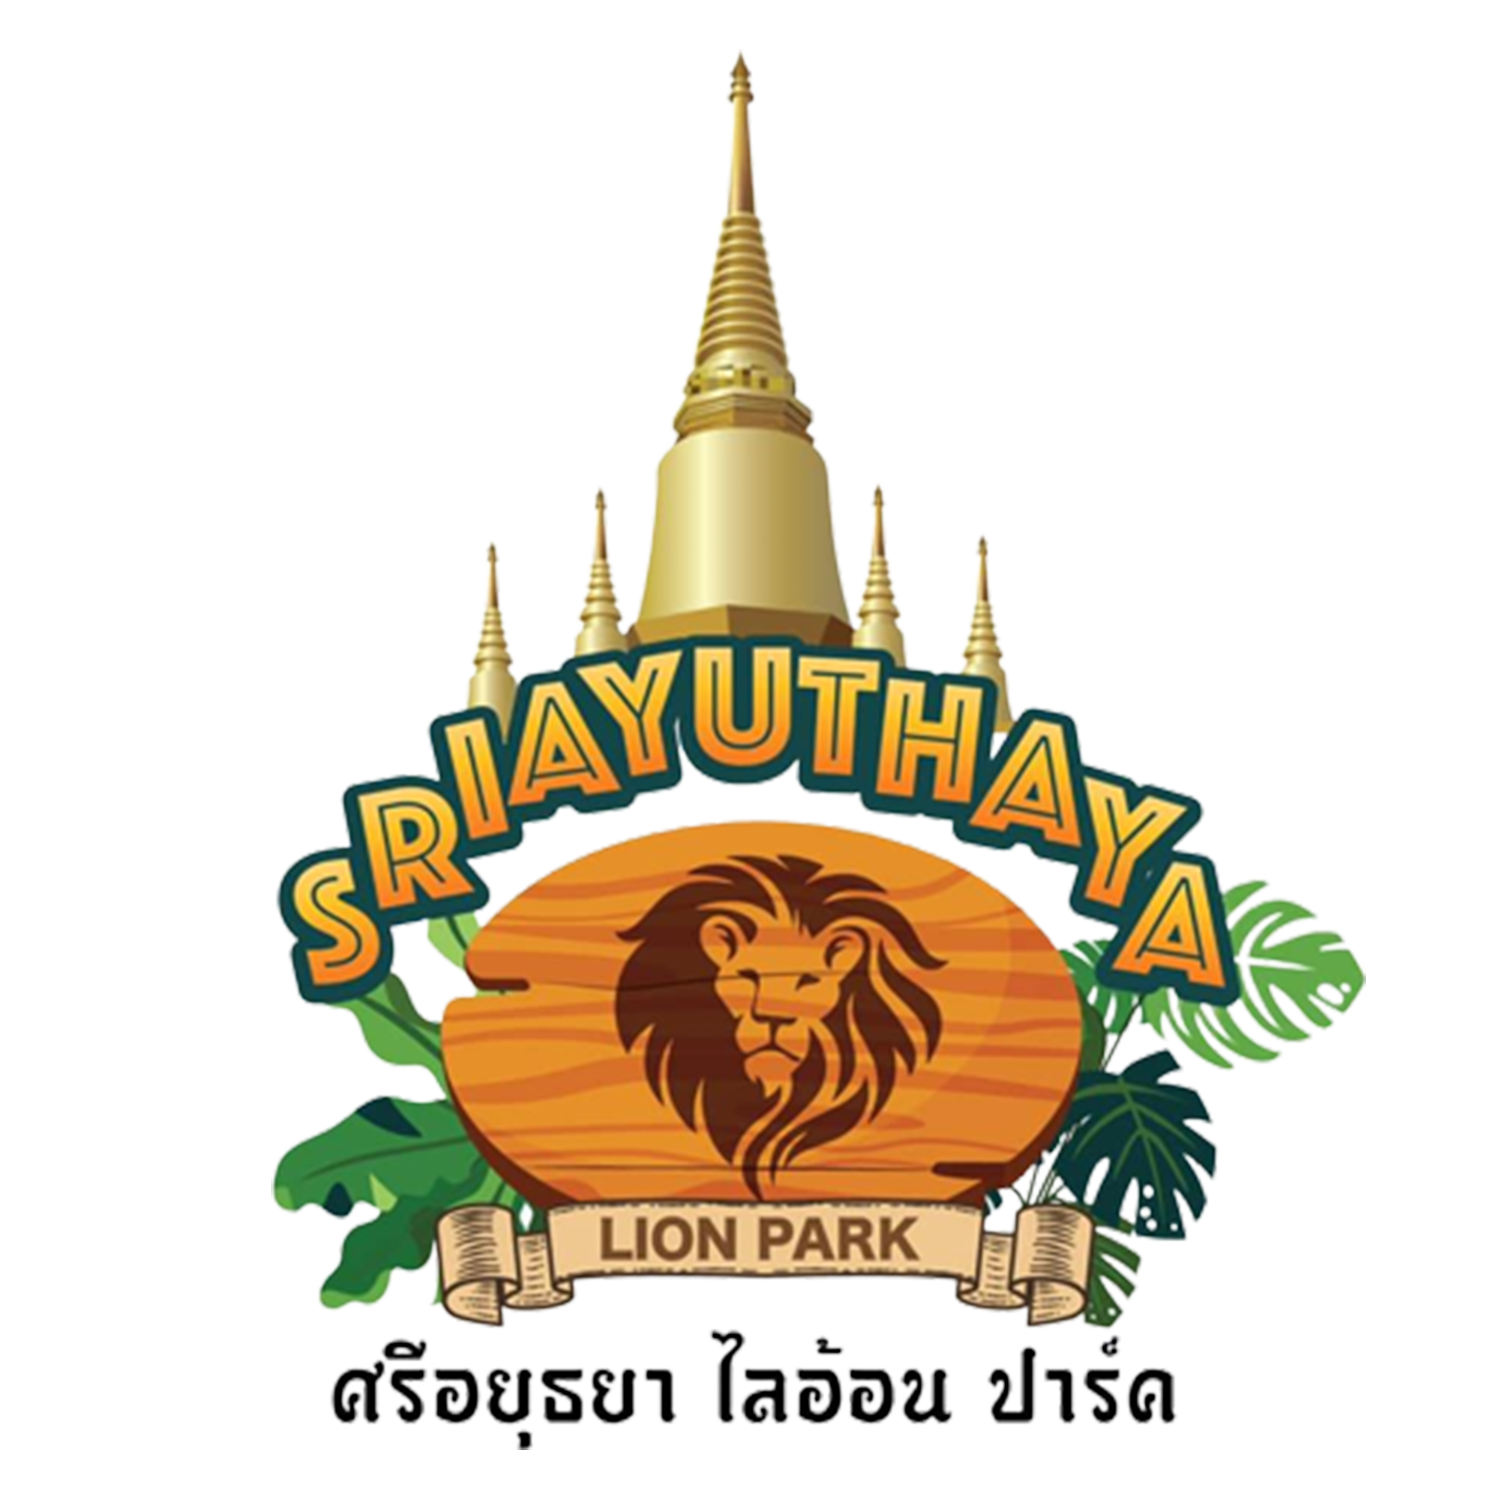 sriayuthayalionpark